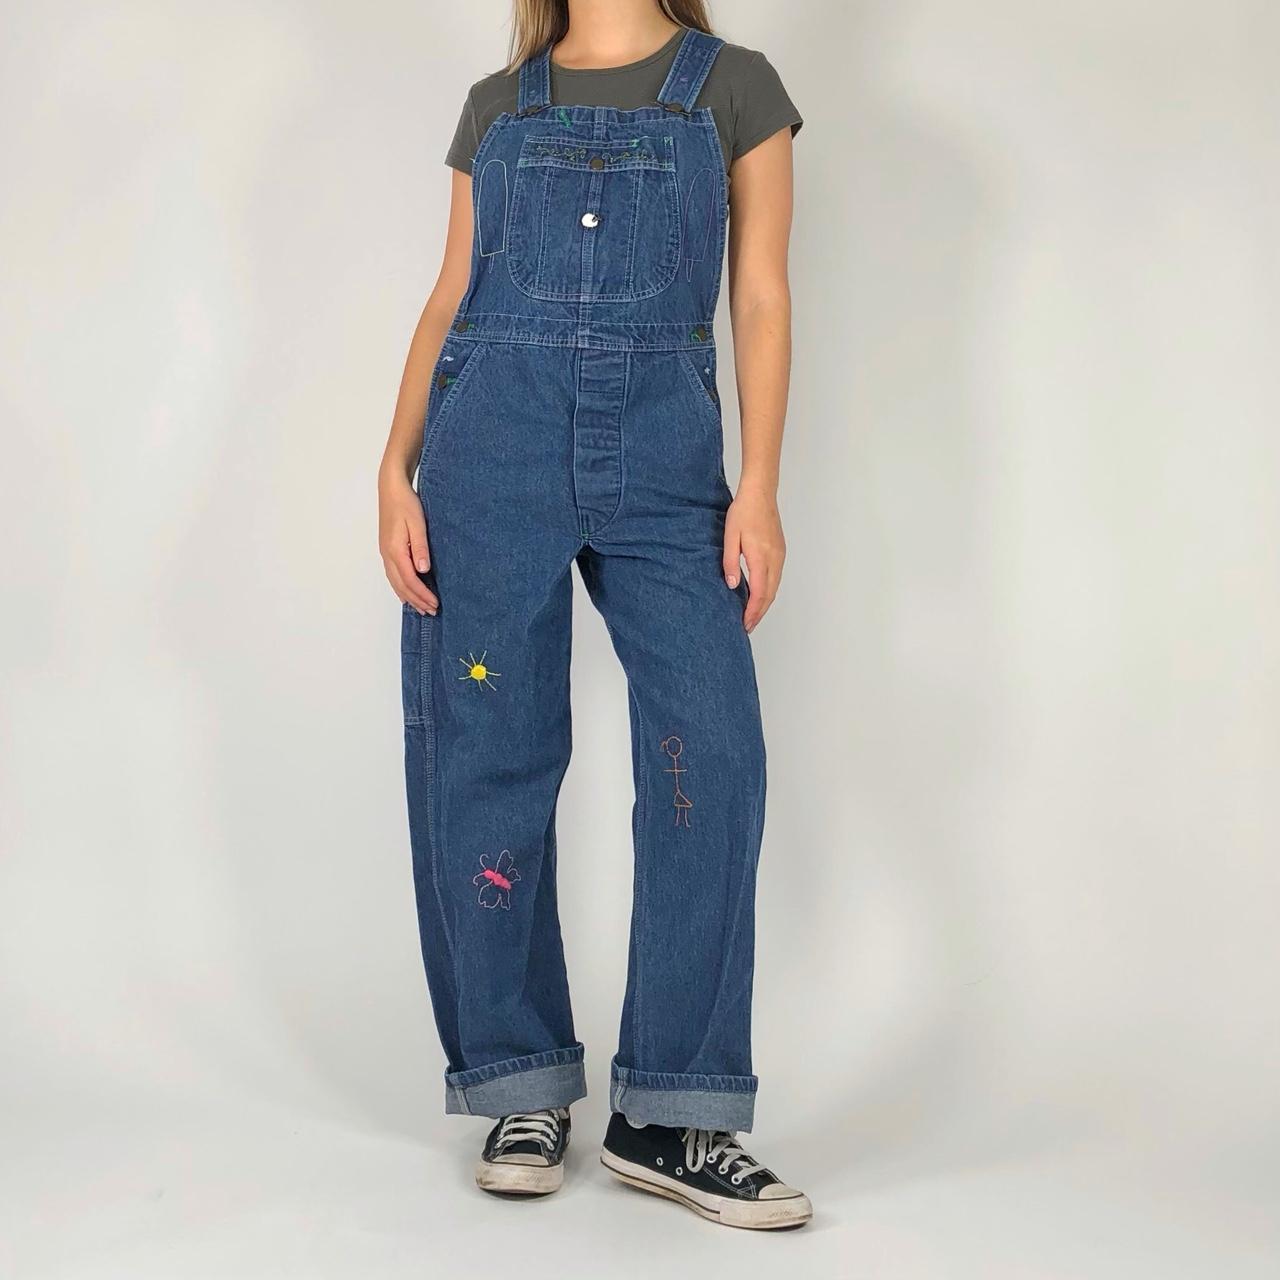 Vintage 80s embroidered overalls! Adjustable straps.... - Depop